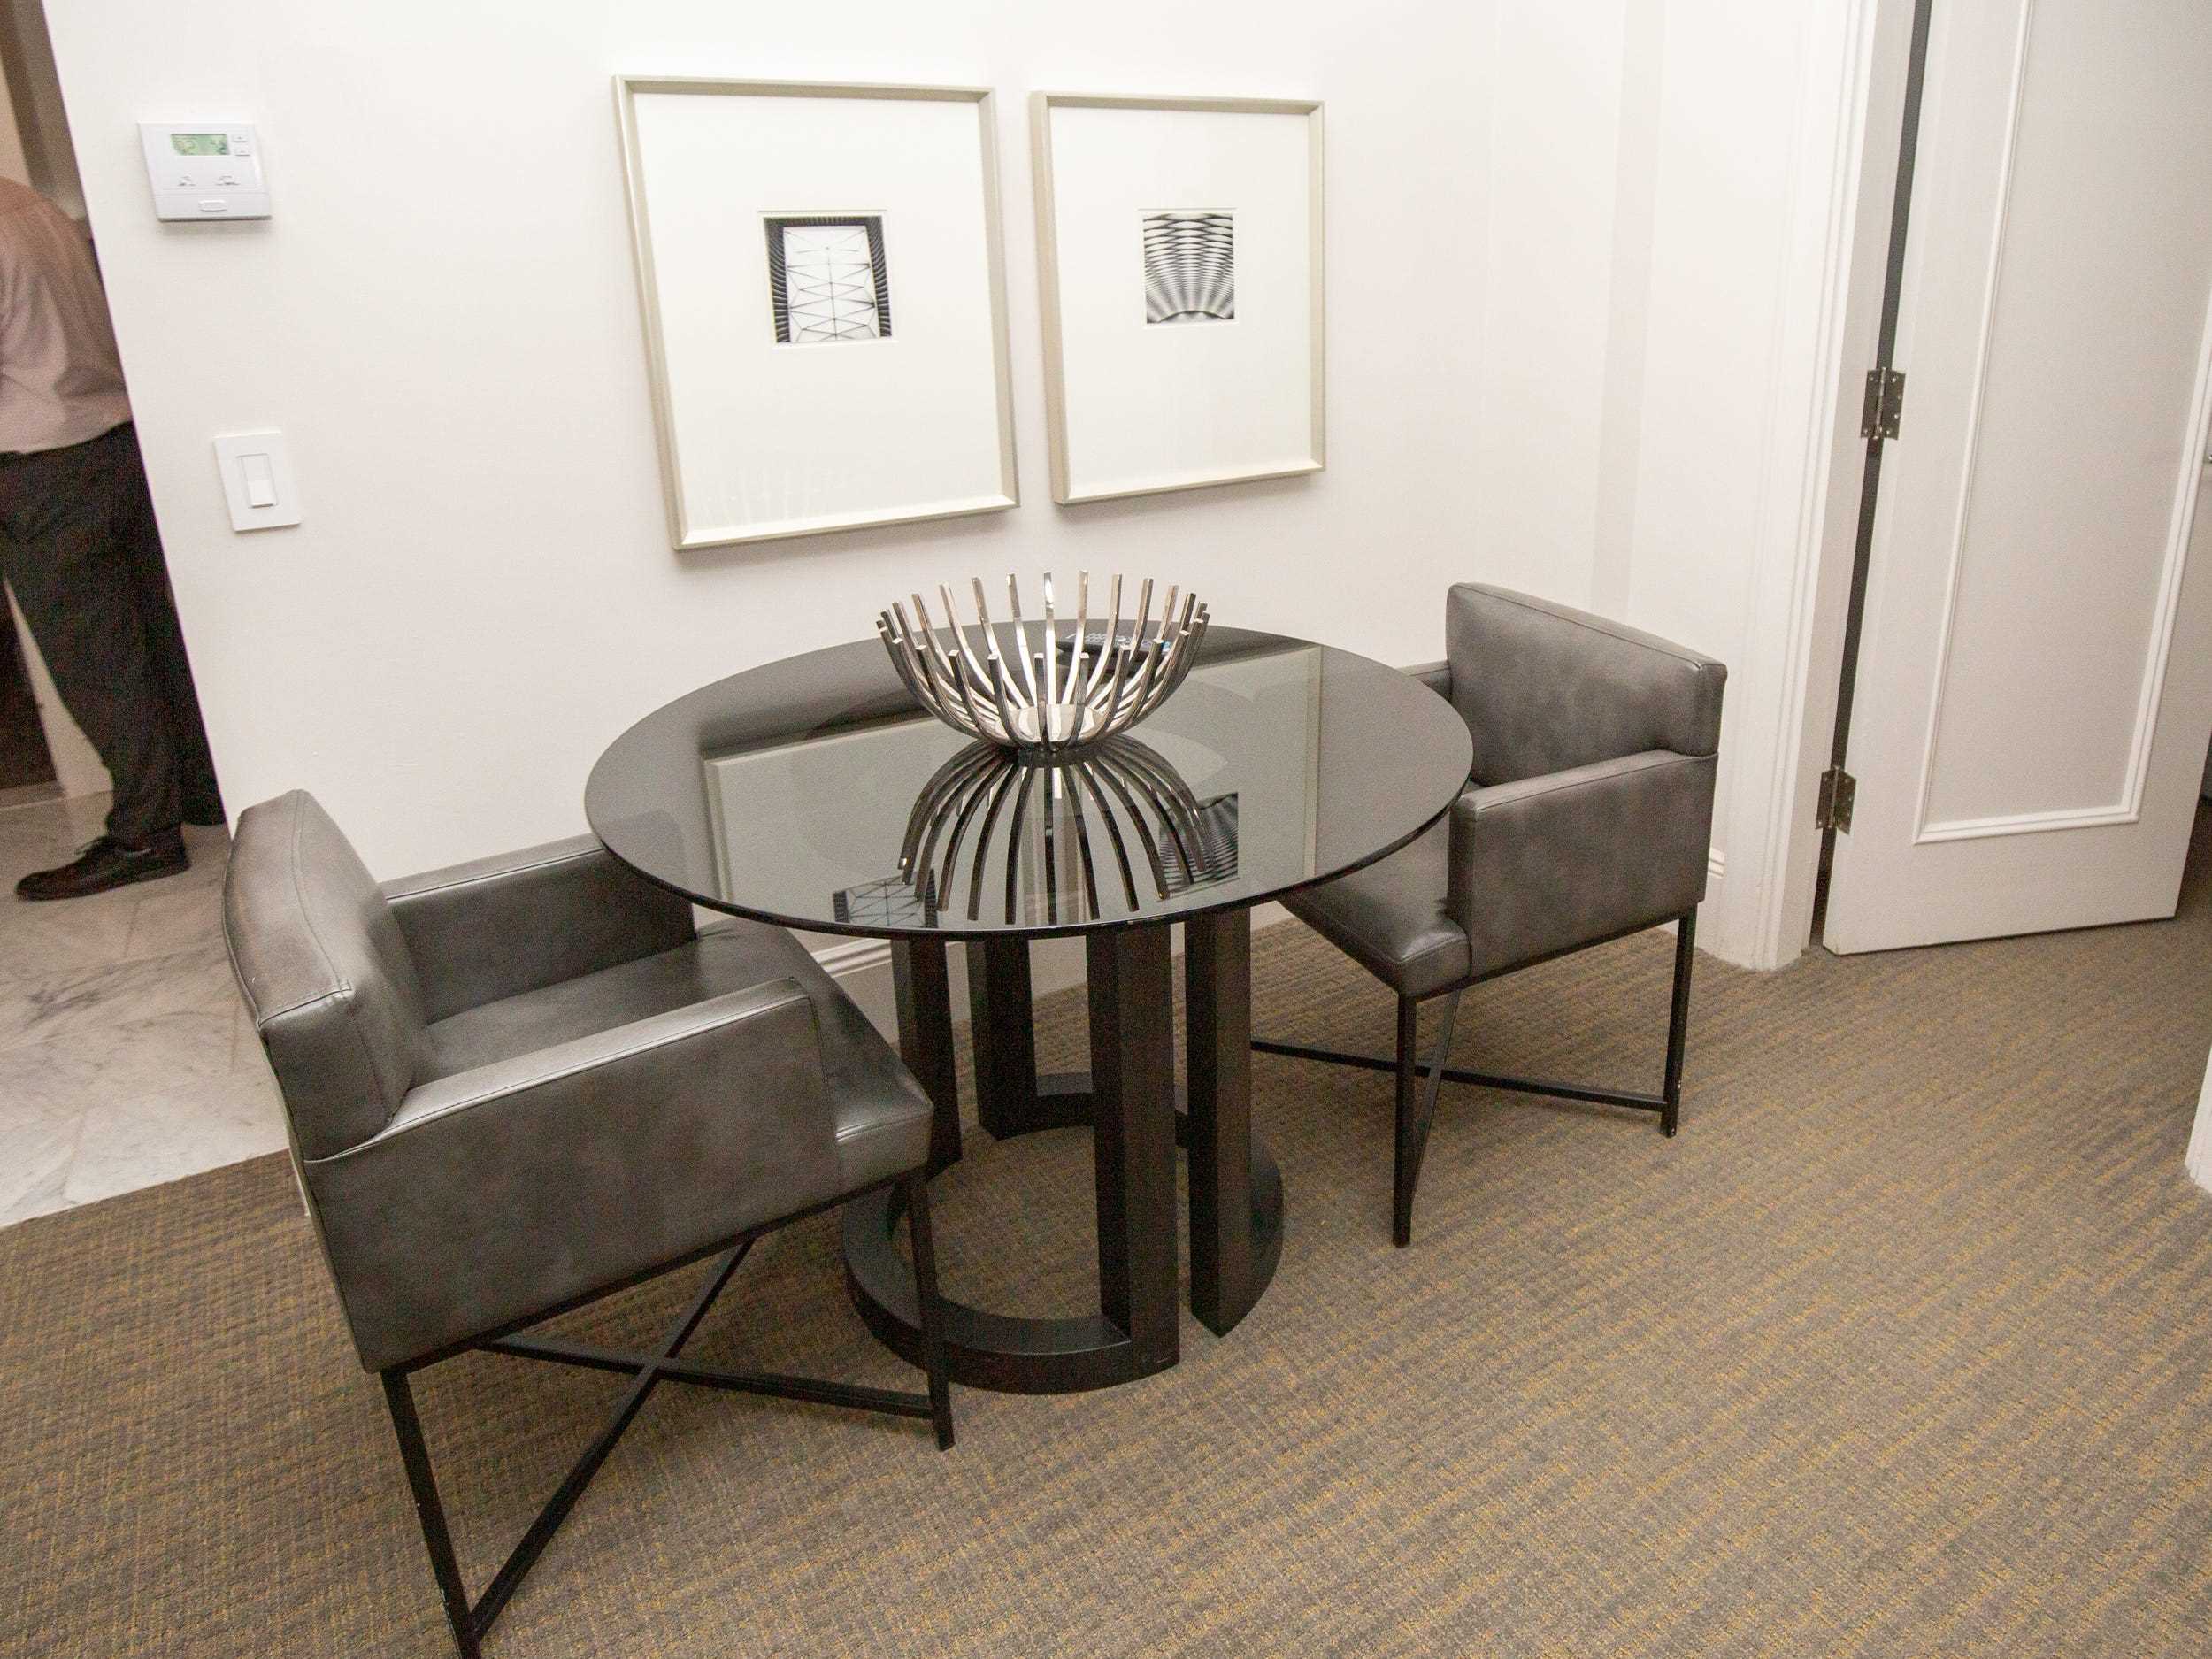 Ein runder Tisch mit zwei Stühlen und zwei an der Wand hängenden Drucken.